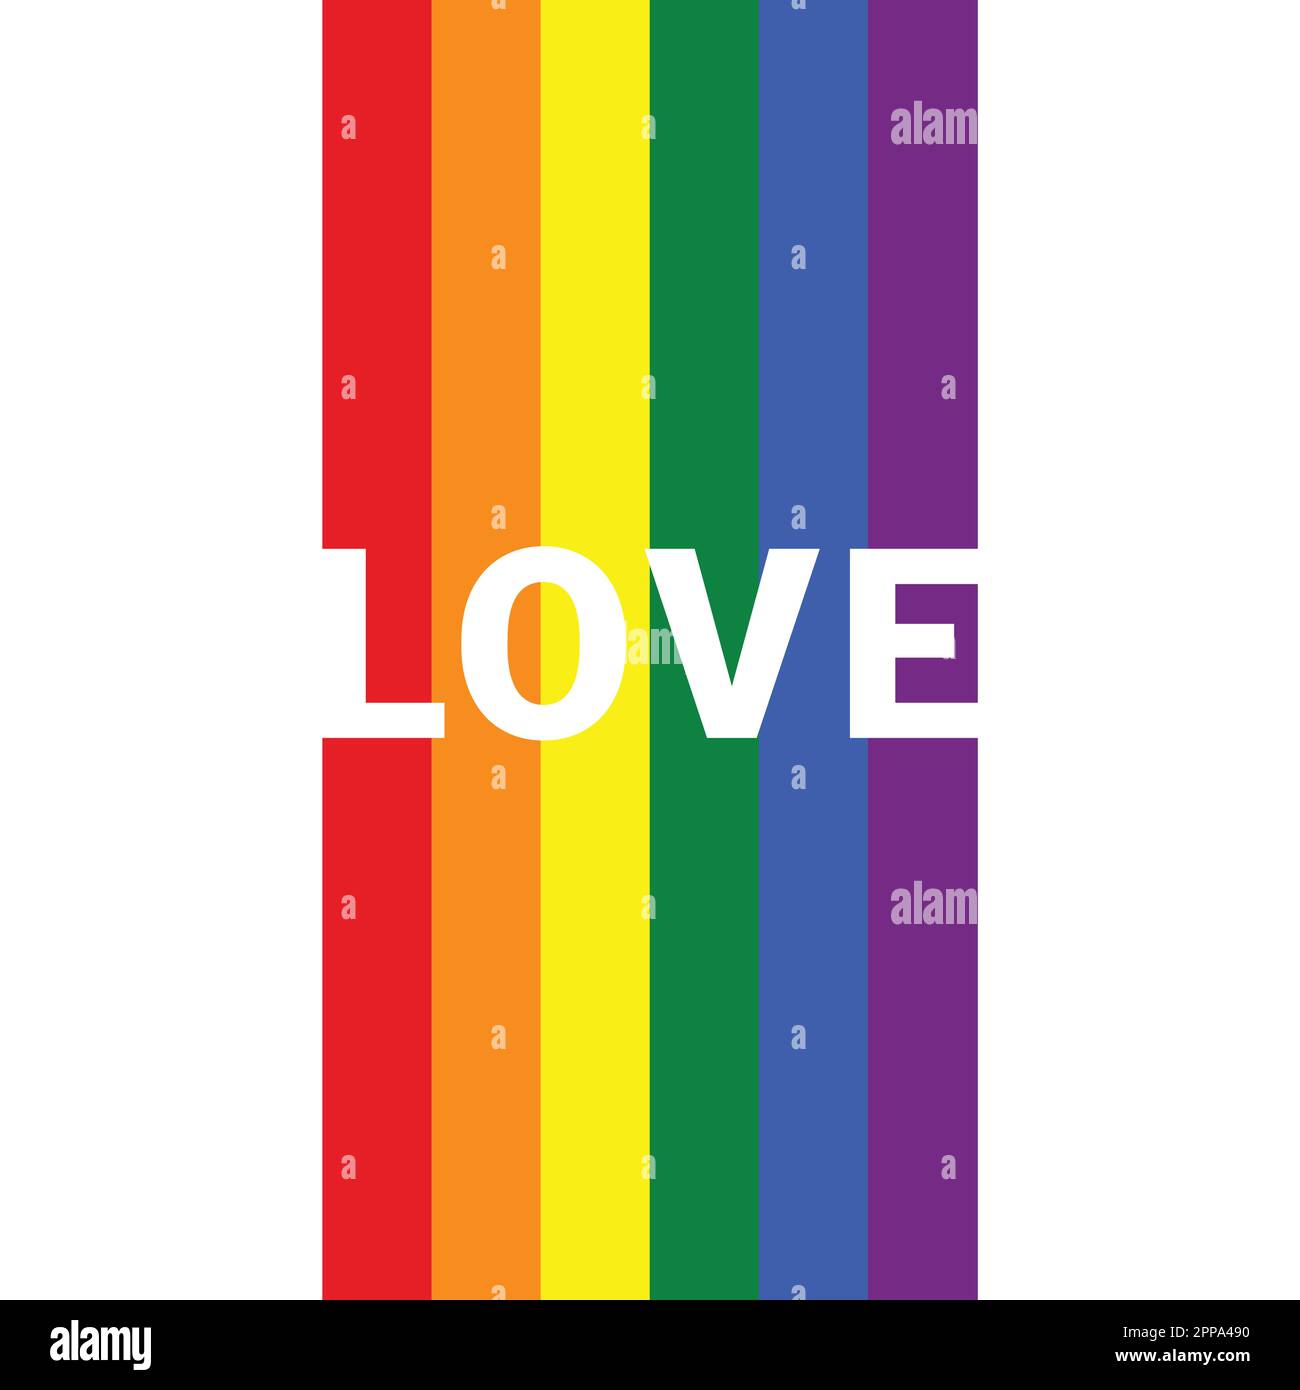 LGBT liebt Text in LGBT-Flaggenfarben. Liebestexte in Regenbogenfarben, die Sie in Ihren Designs verwenden können. Liebe Grüße auf 7 Farben: Rot, orange, gelb, grün, blau Stockfoto